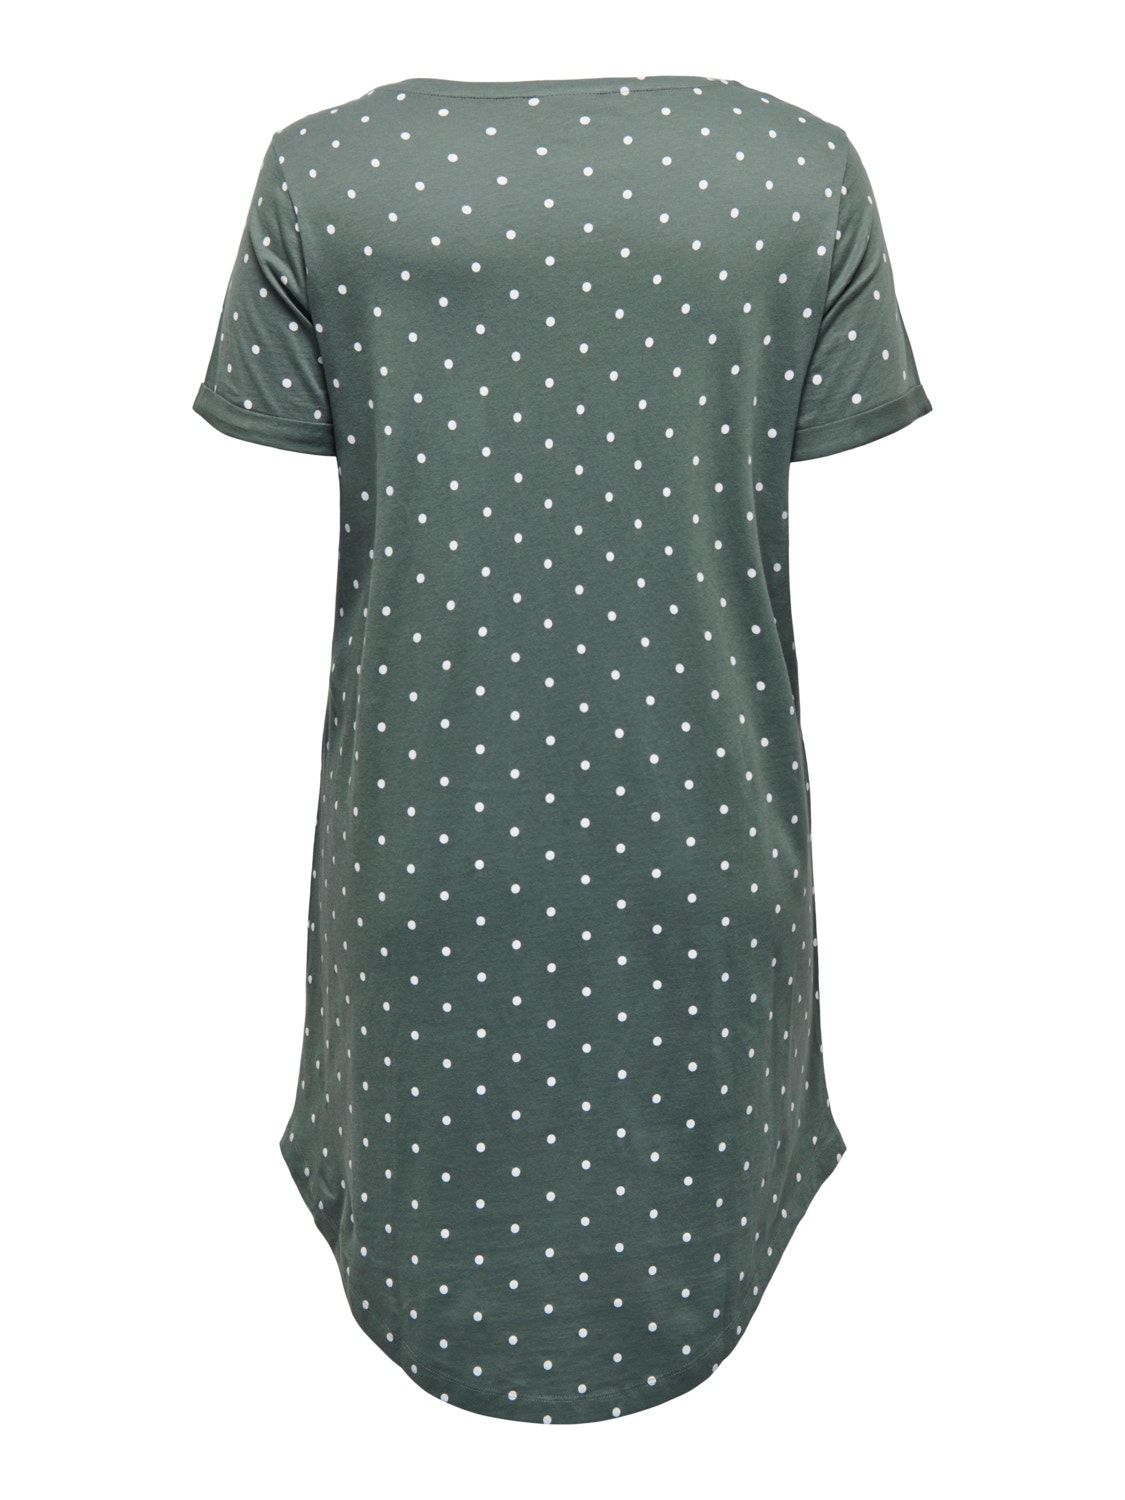 ONLY Curvy tee cotton dress -Balsam Green - 15300636